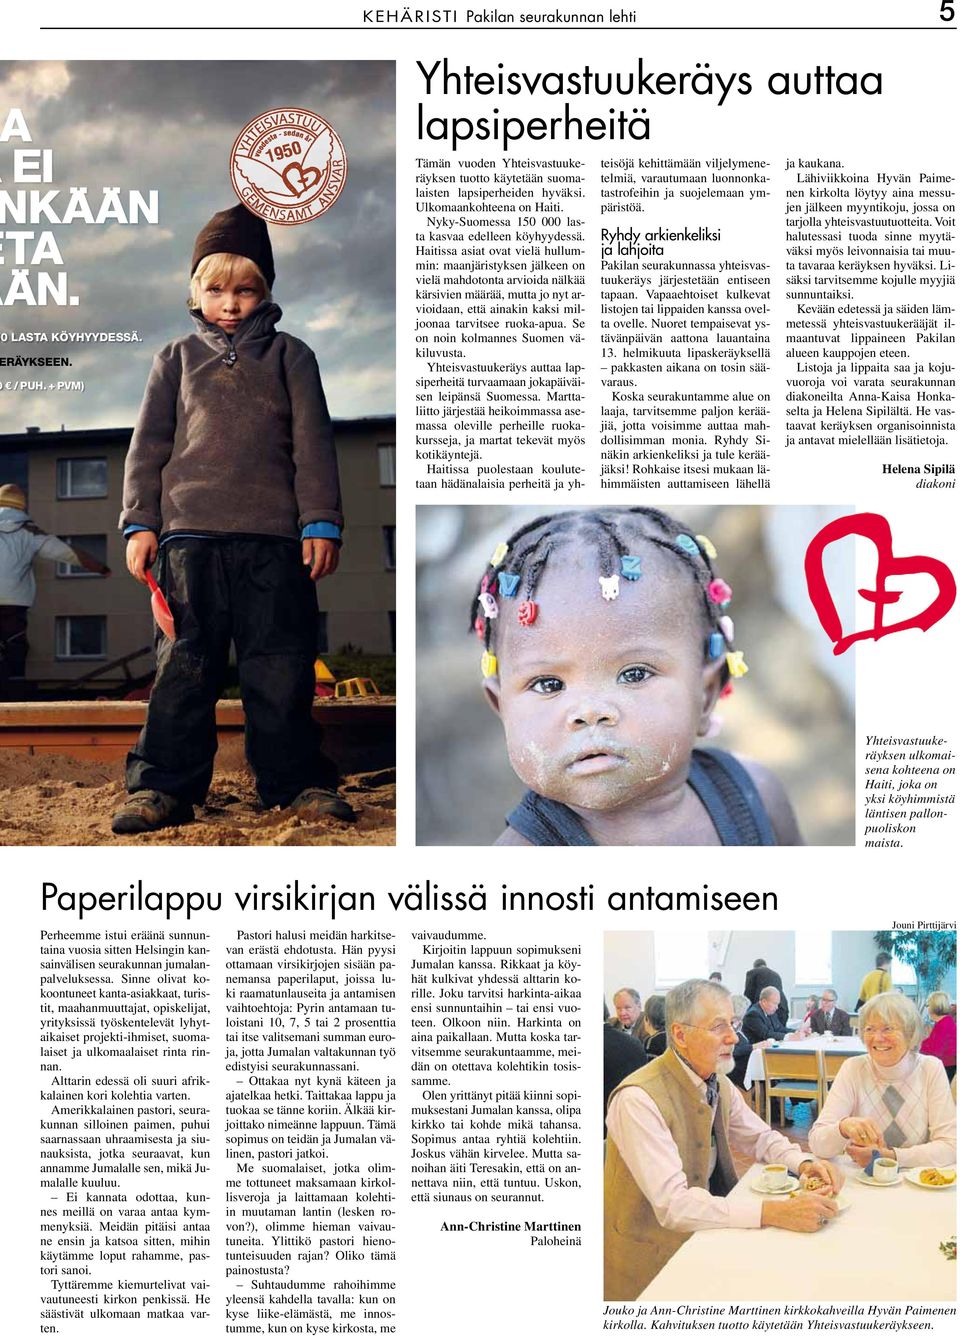 Nyky-Suomessa 150 000 lasta kasvaa edelleen köyhyydessä.